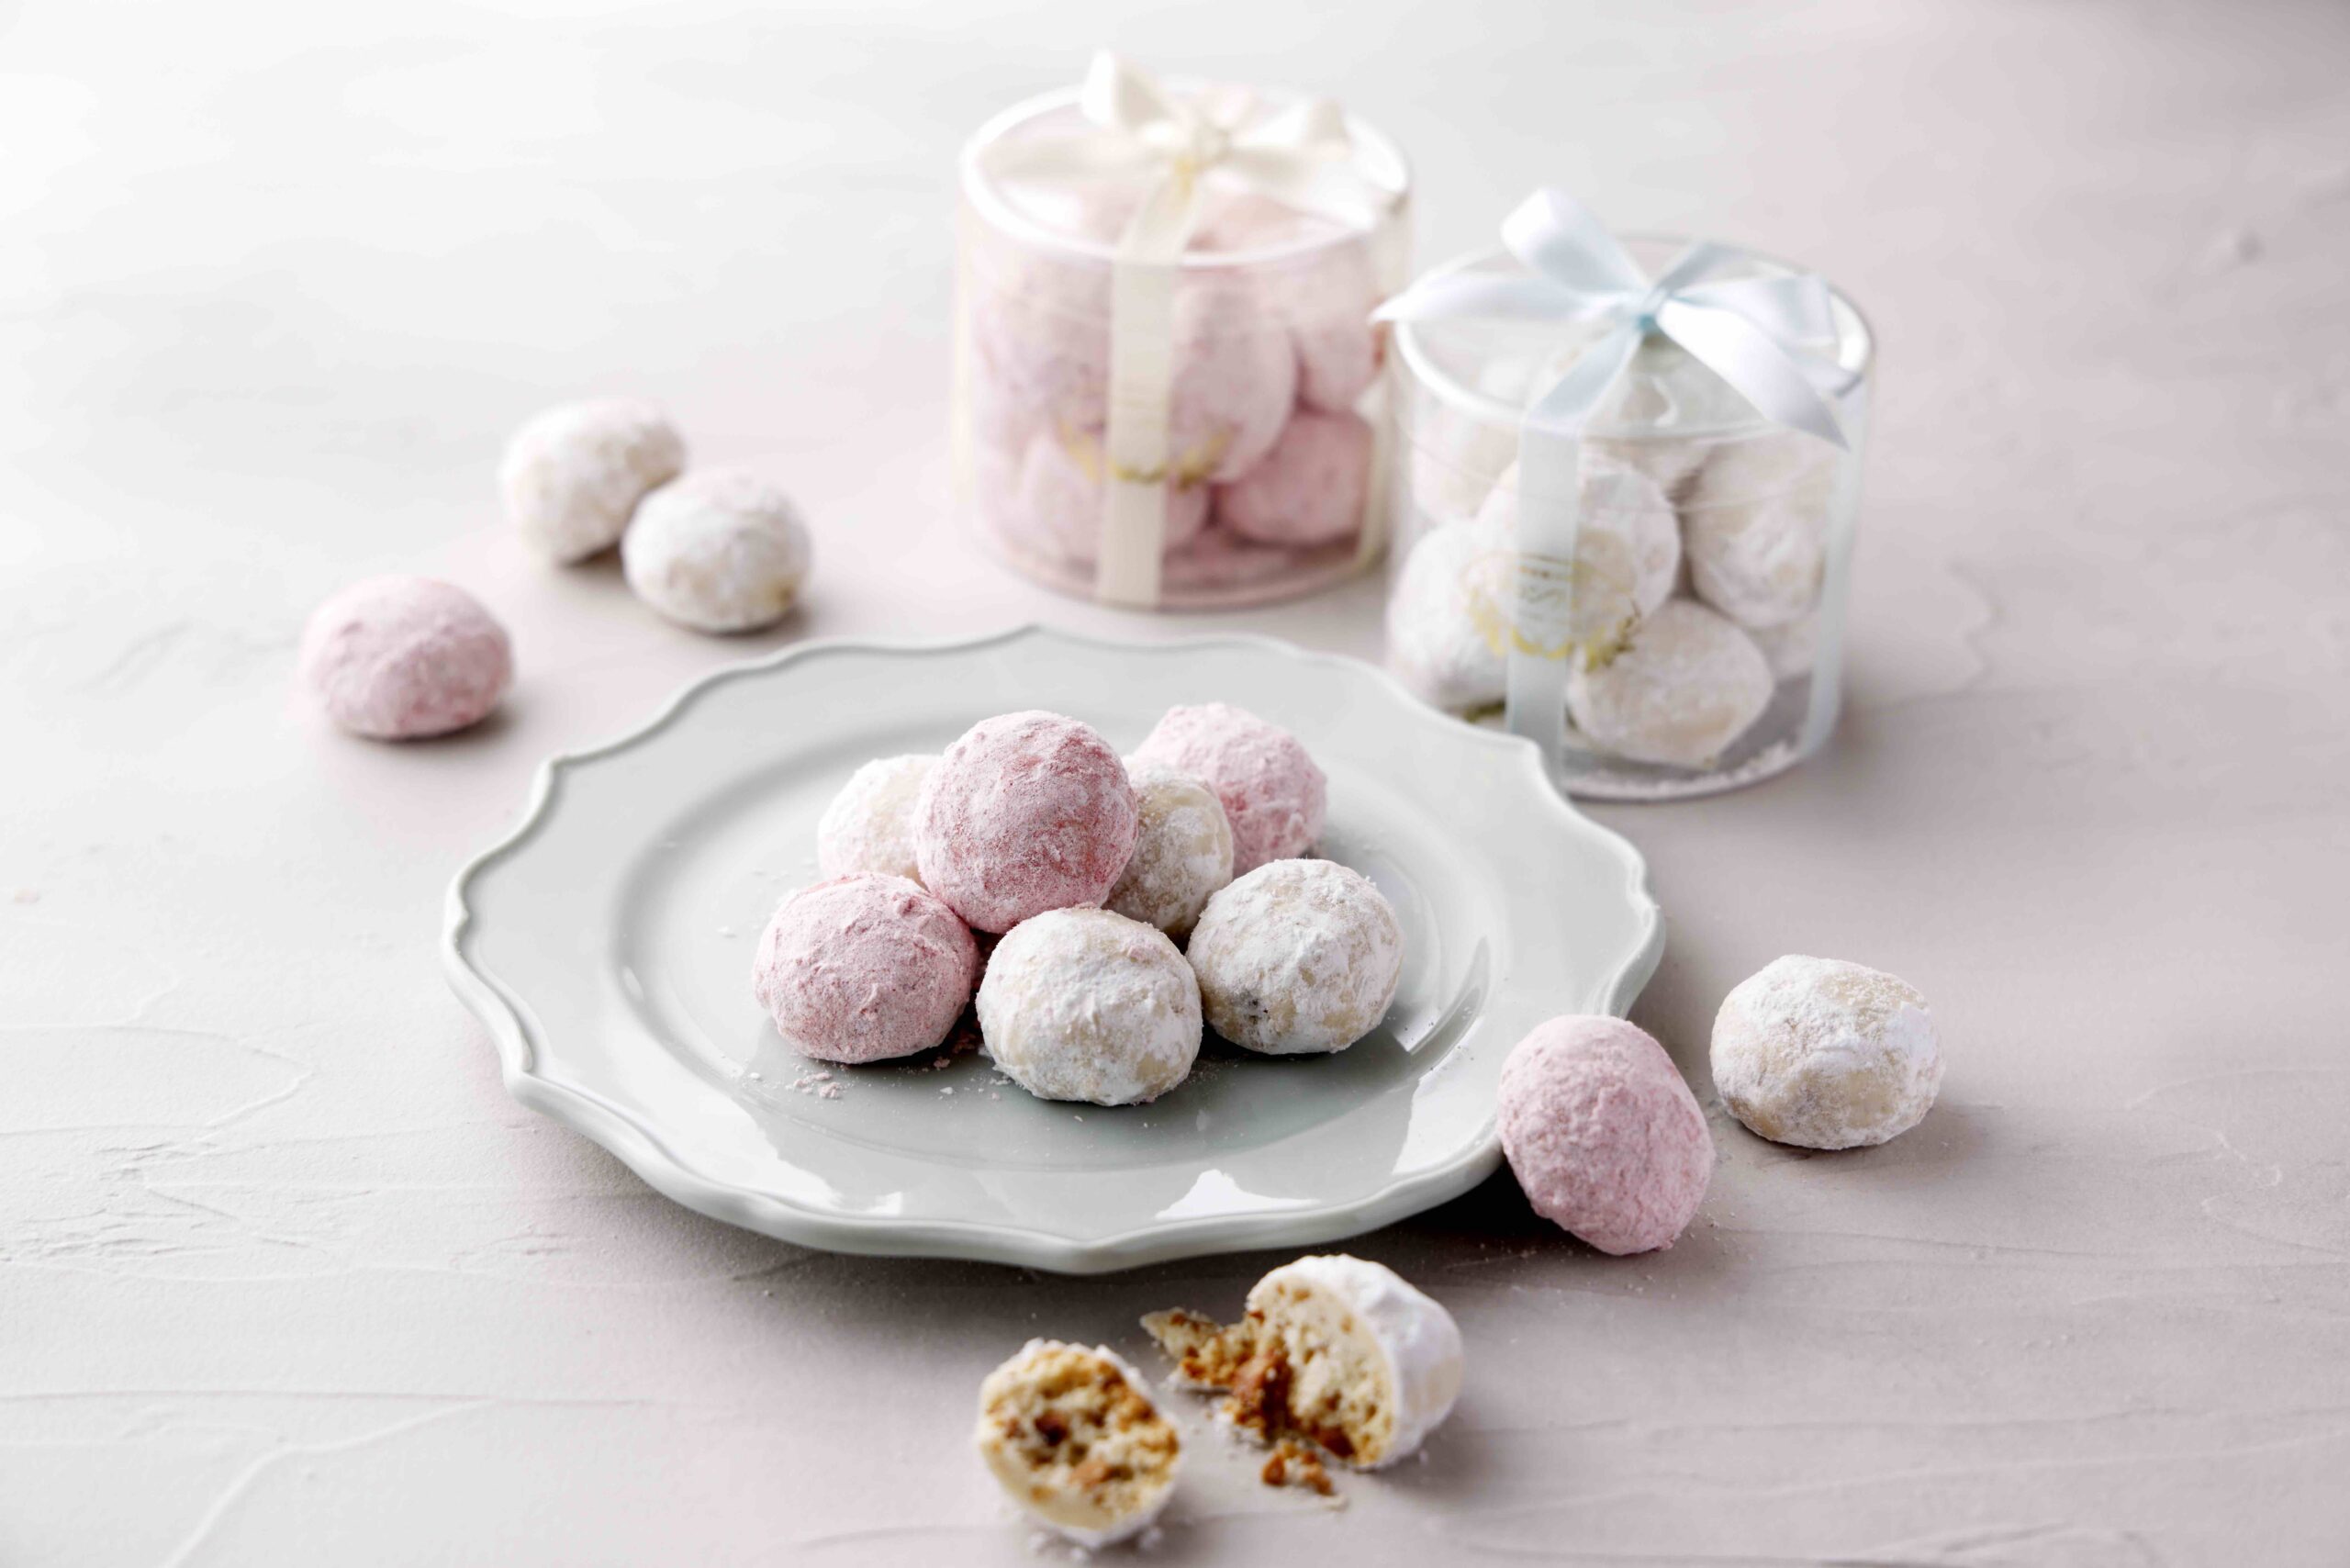 ペルル(白)×ペルル ルージュ(ピンク)<br /> ペルルとはフランス語で真珠を意味します。真珠のような煌めきをイメージして名付けられました。口の中でホロッと解けるような口溶けの良いクッキーです。紅茶や珈琲によく合います。